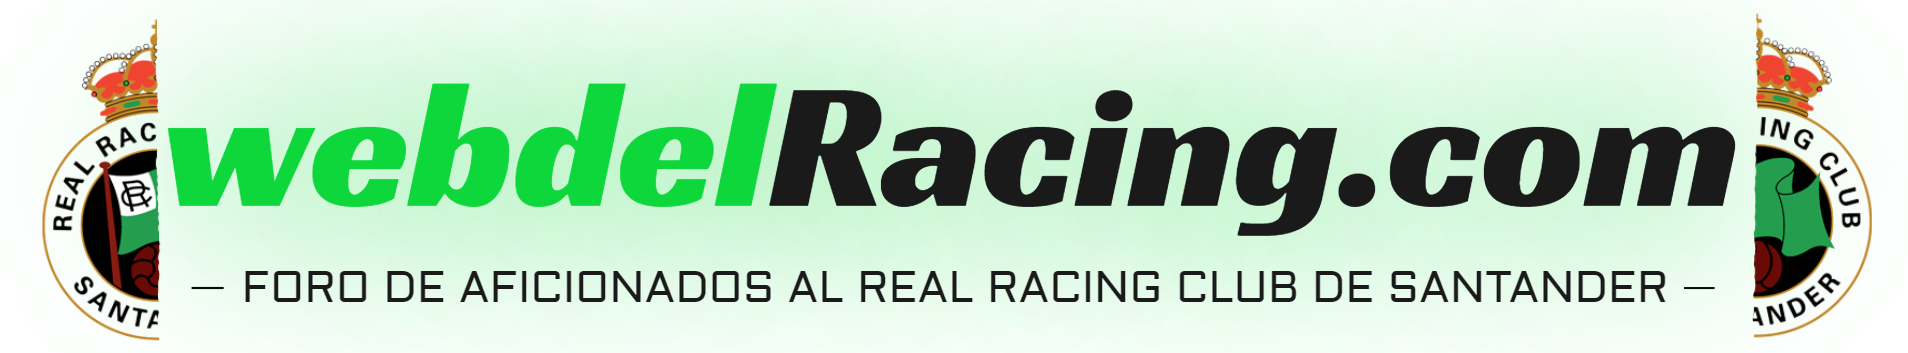 Web del Racing - Todo sobre el Real Racing Club